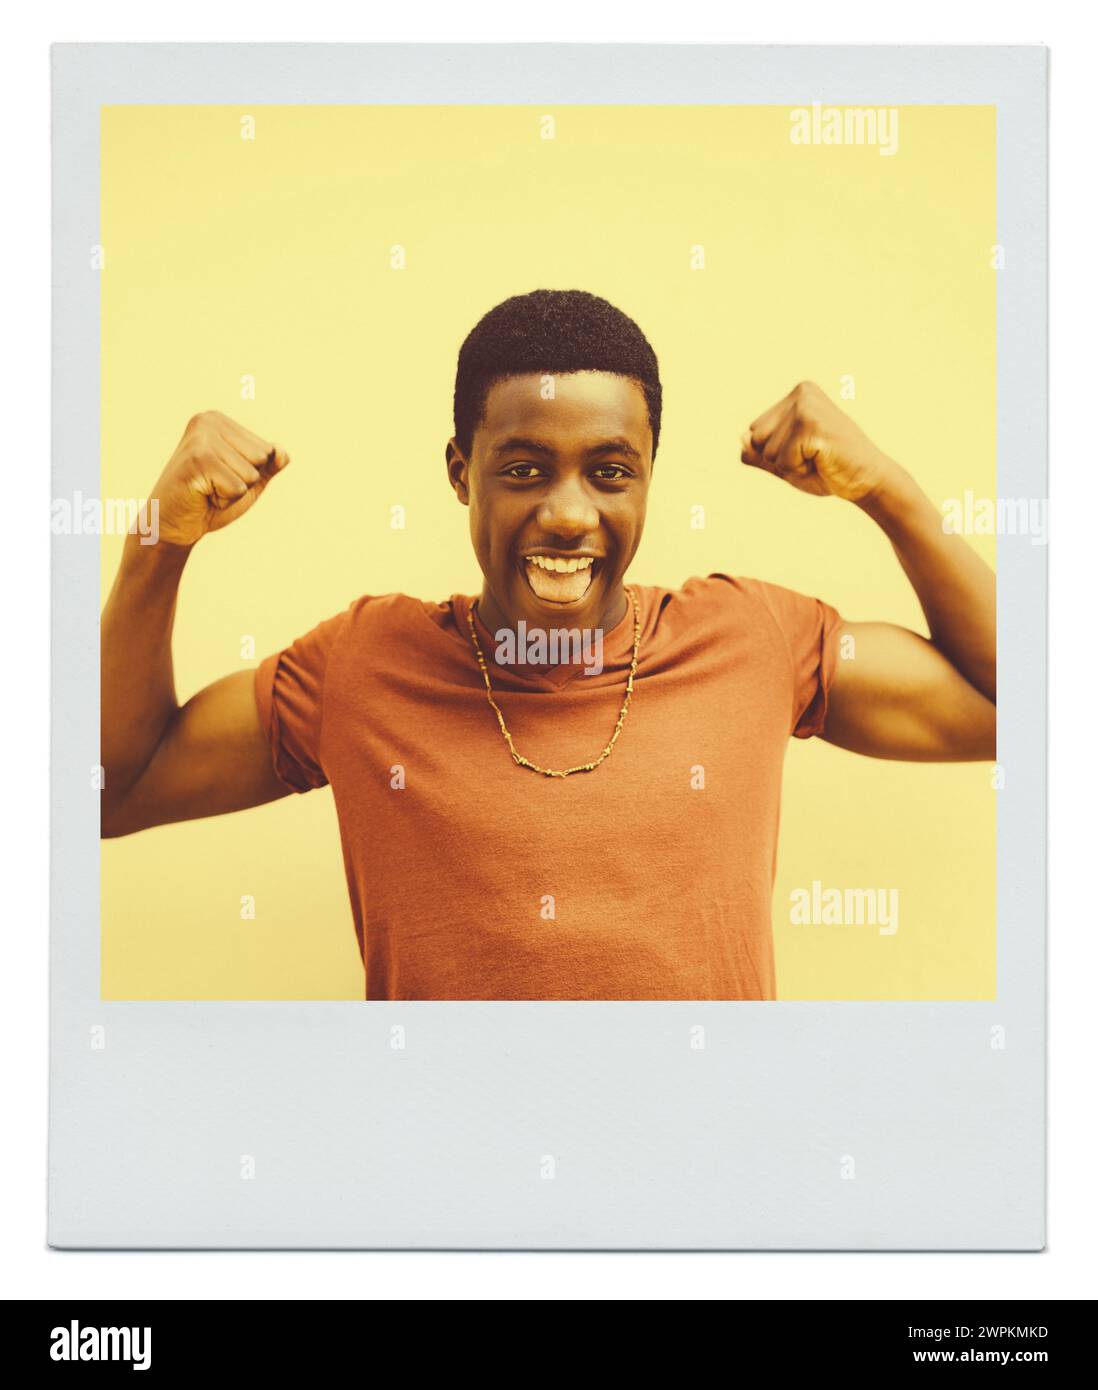 Schwarzer Mann, aufgeregt und glücklich mit Flex für Muskelkraft, Energie und Trainingserfolg auf gelbem Hintergrund. Afrikanische Person, lächeln und mit Stockfoto